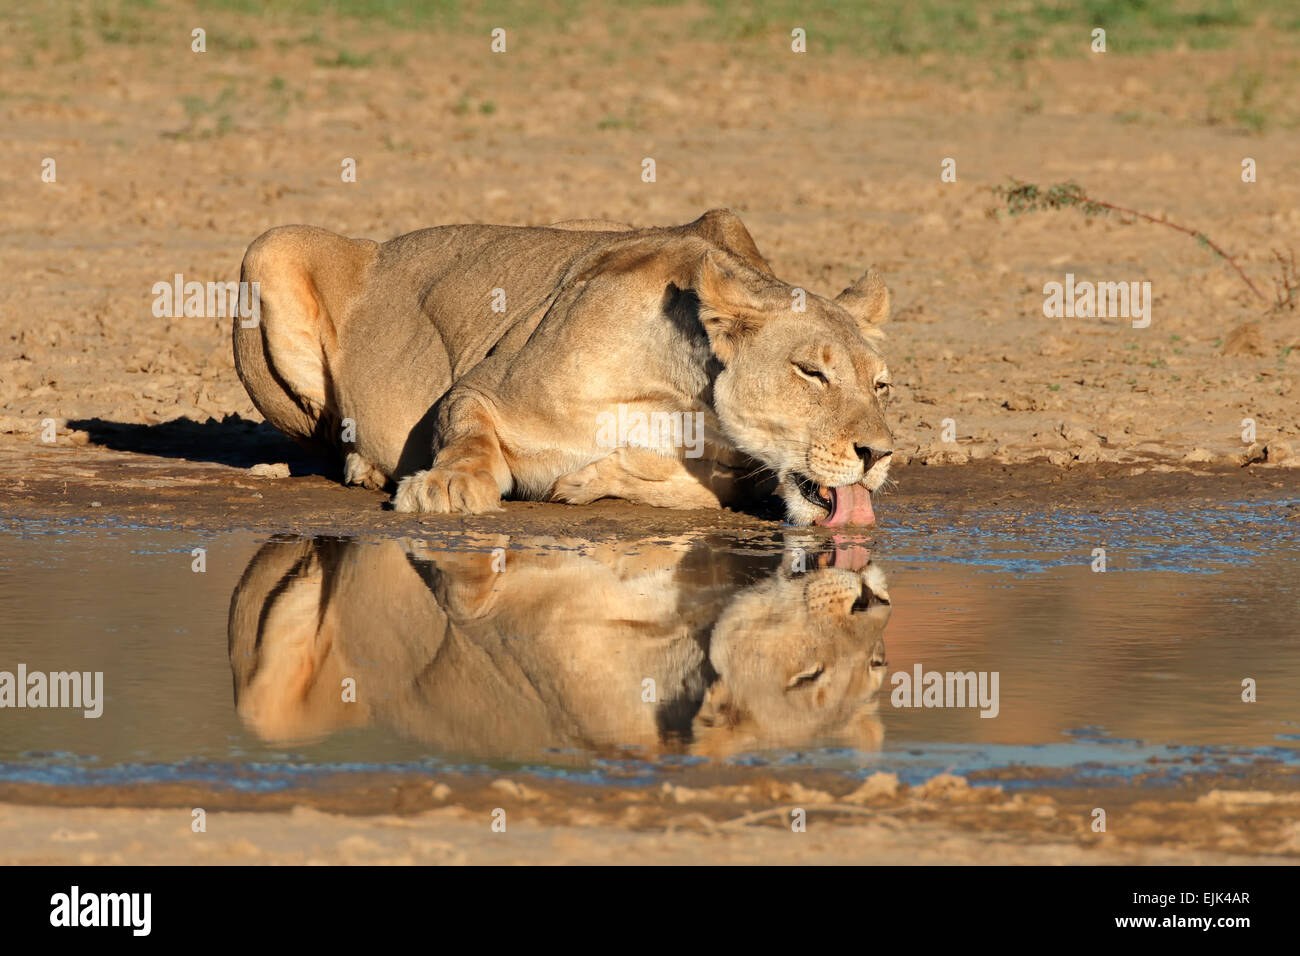 Lioness (Panthera leo) de boire à un point d'eau, désert du Kalahari, Afrique du Sud Banque D'Images